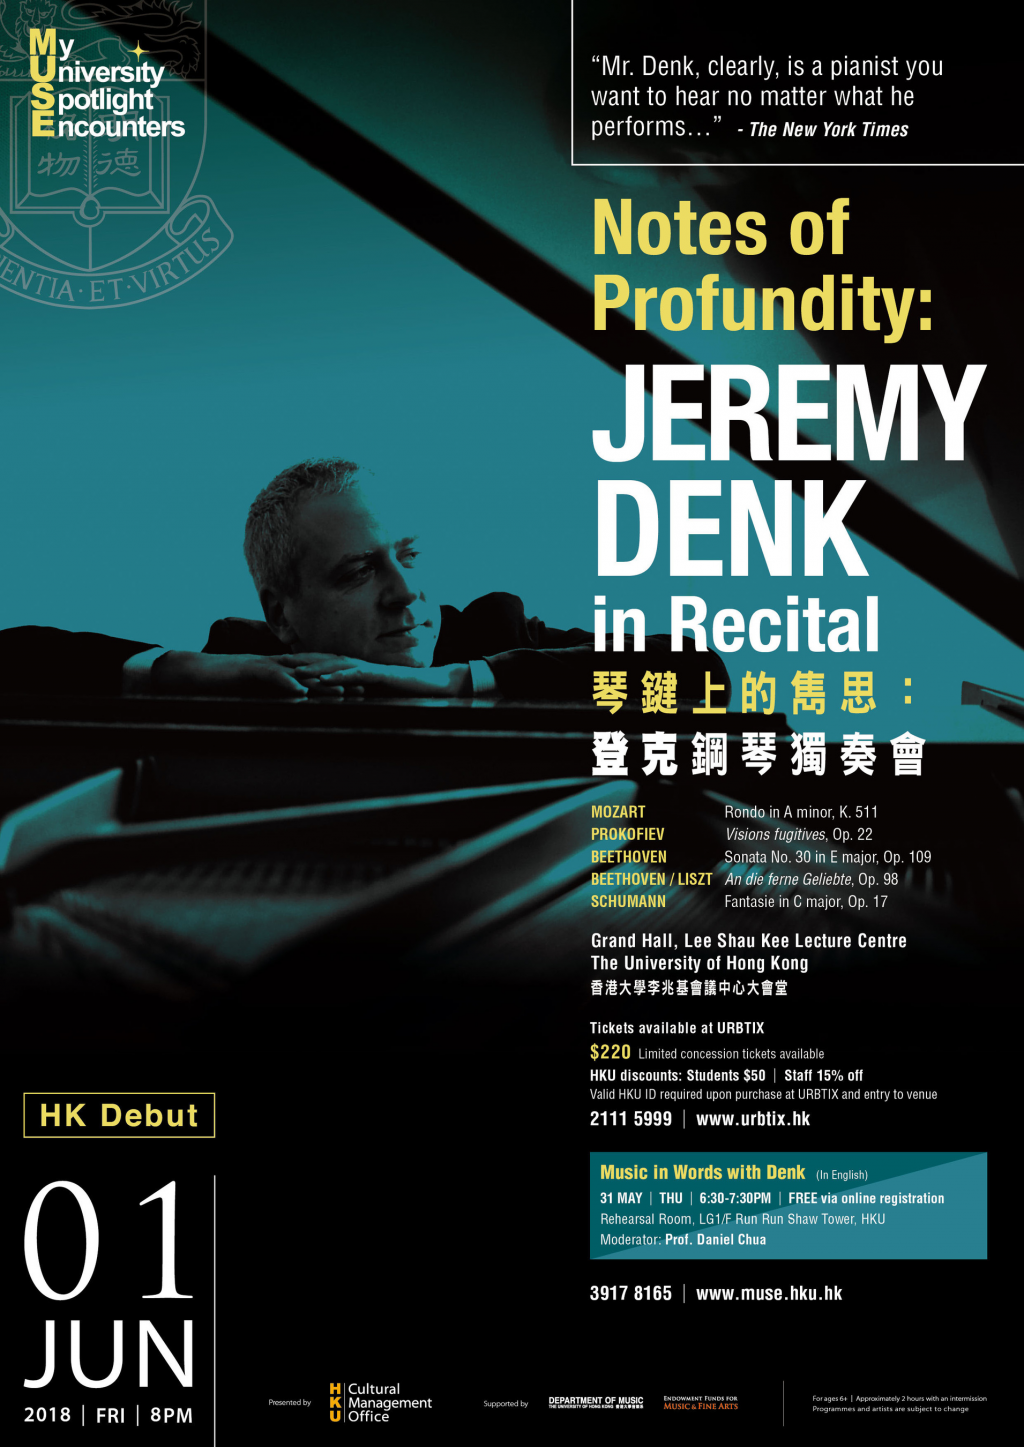 Award-winning pianist Jeremy Denk's HK Debut